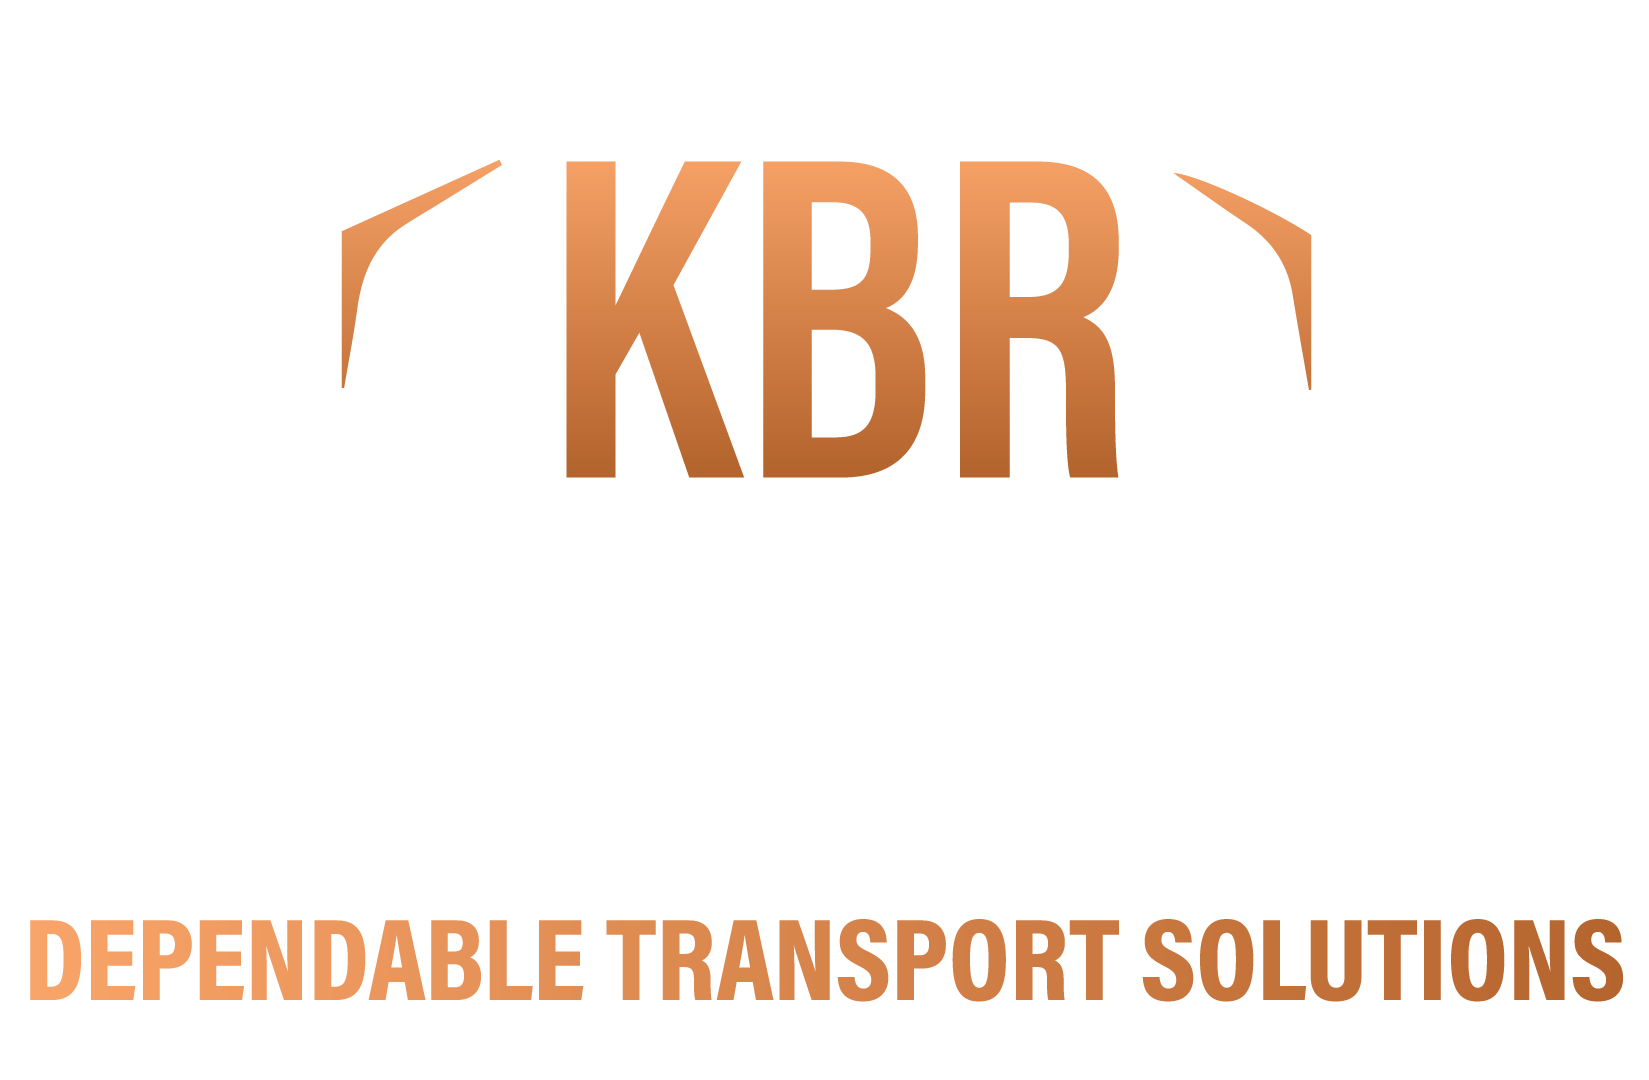 KBR Transport